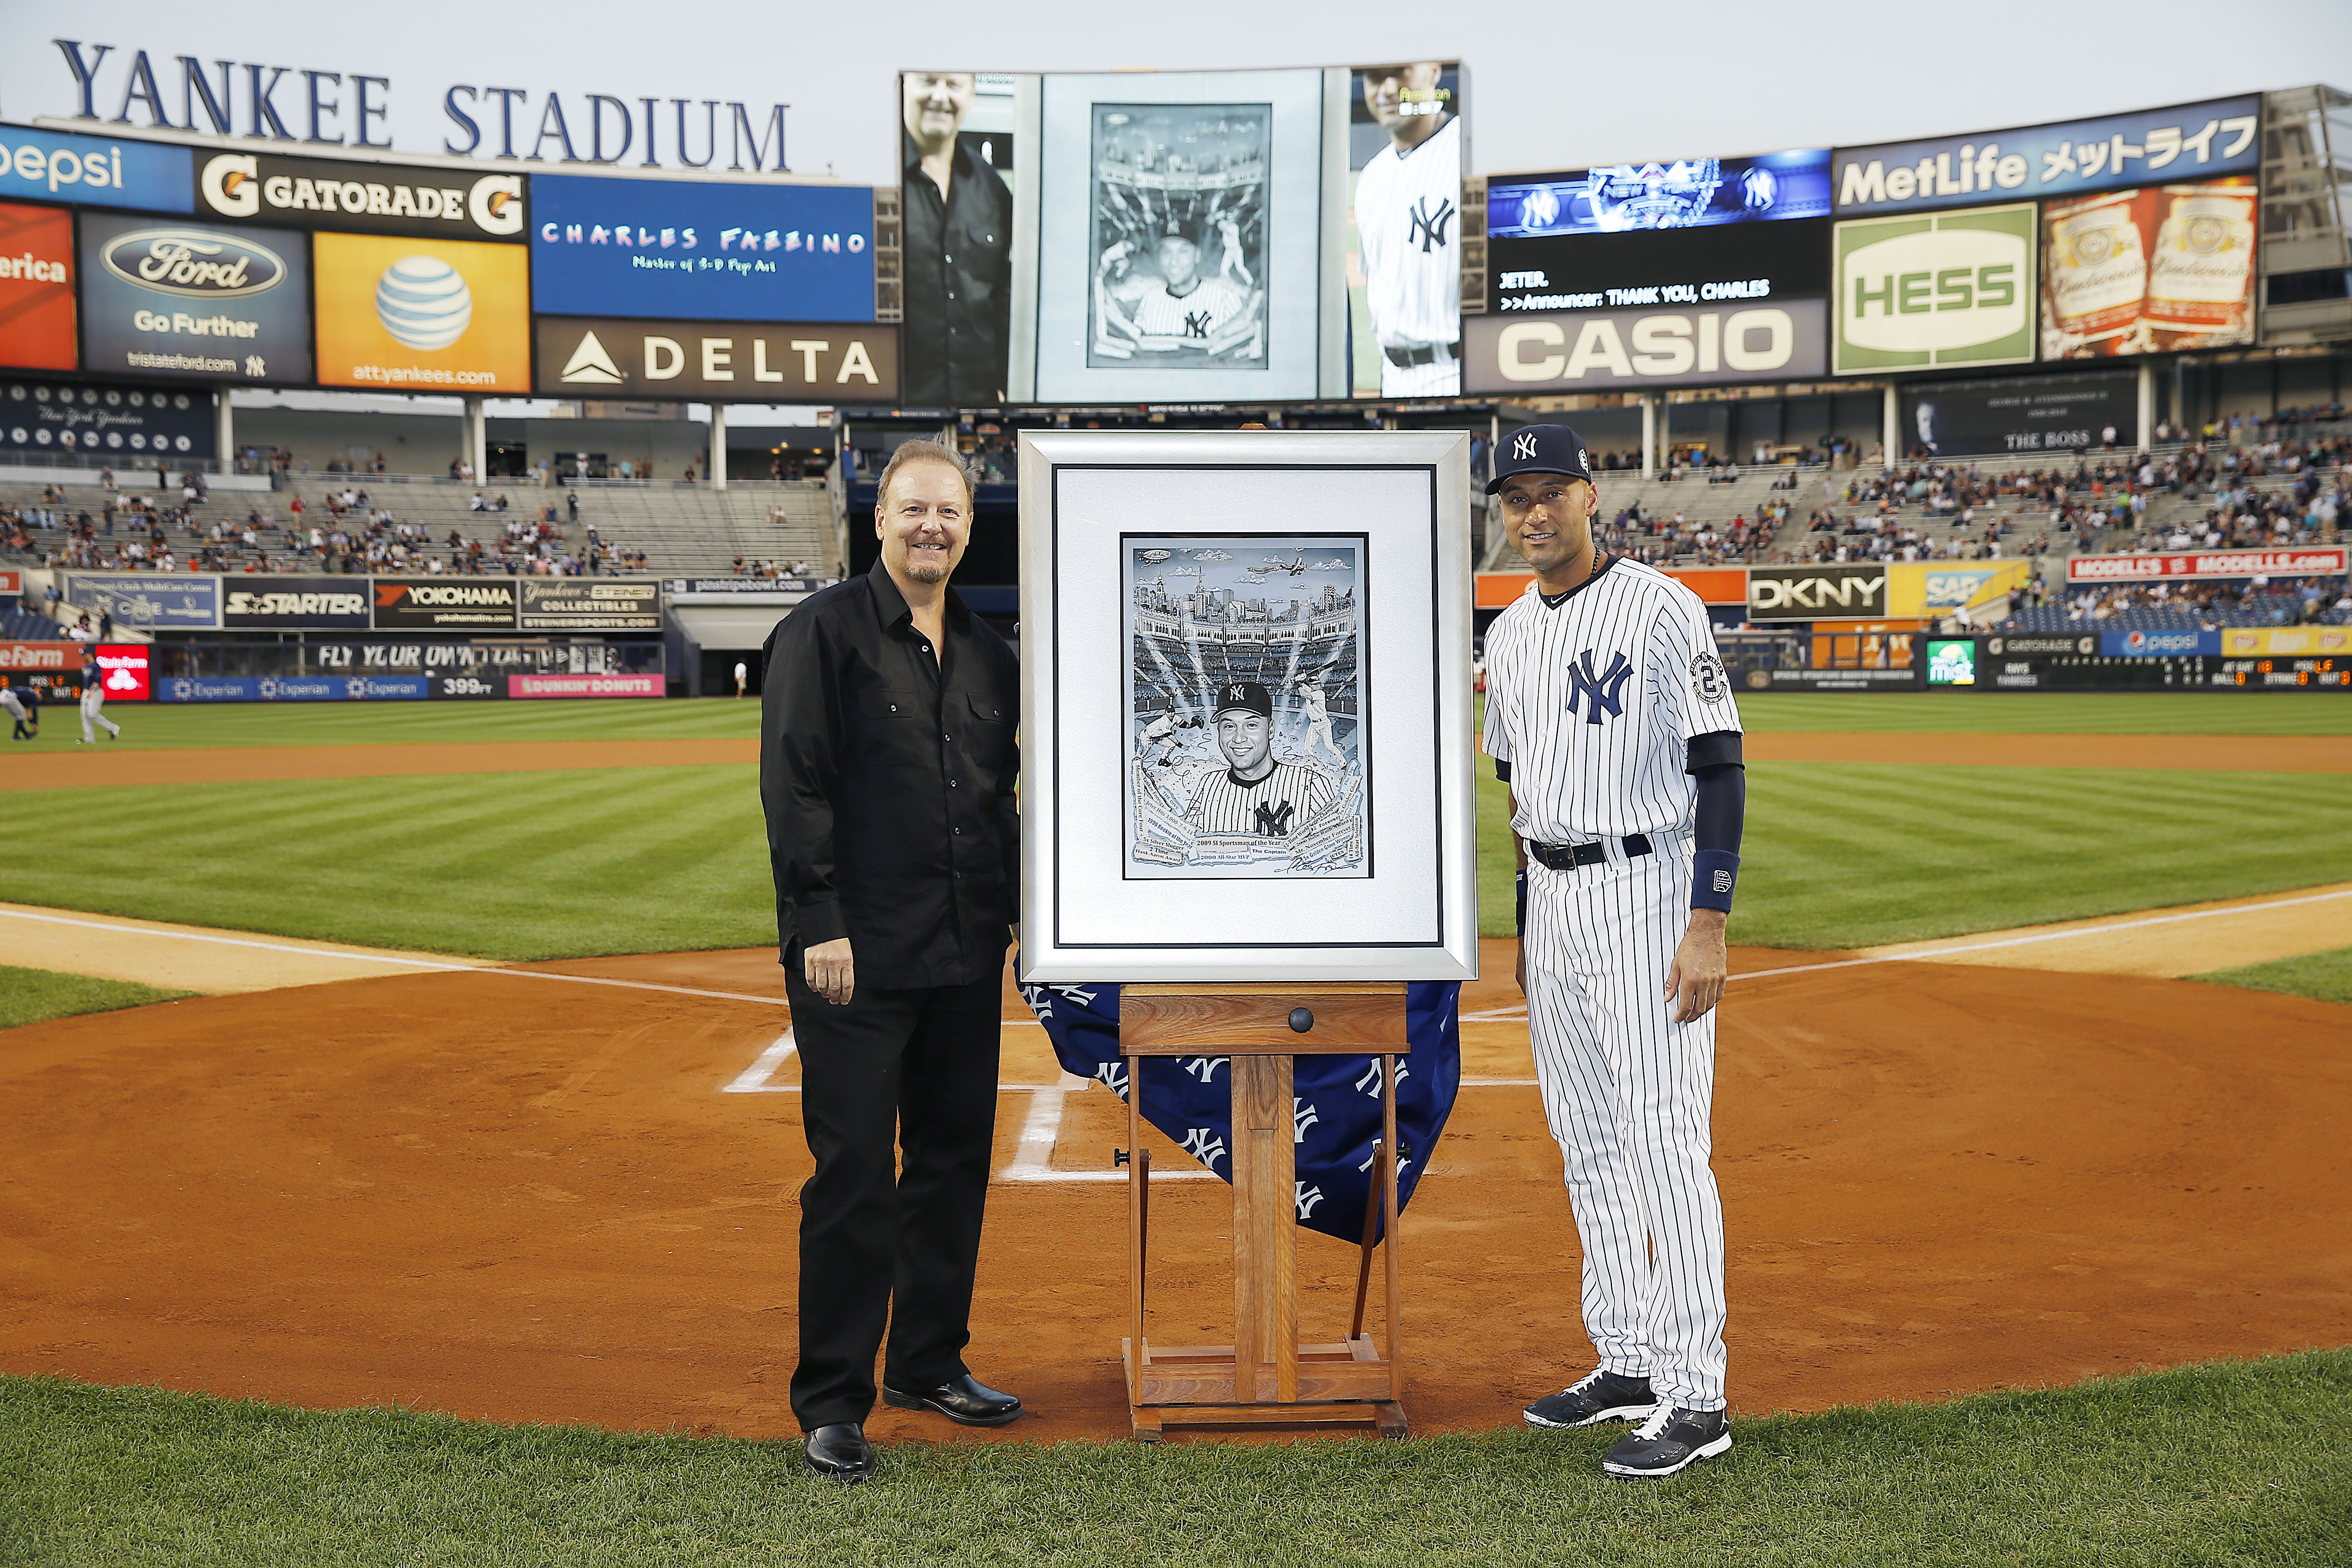 MLB New York Yankees Derek Jeter Taking the Field Yankee Stadium 8